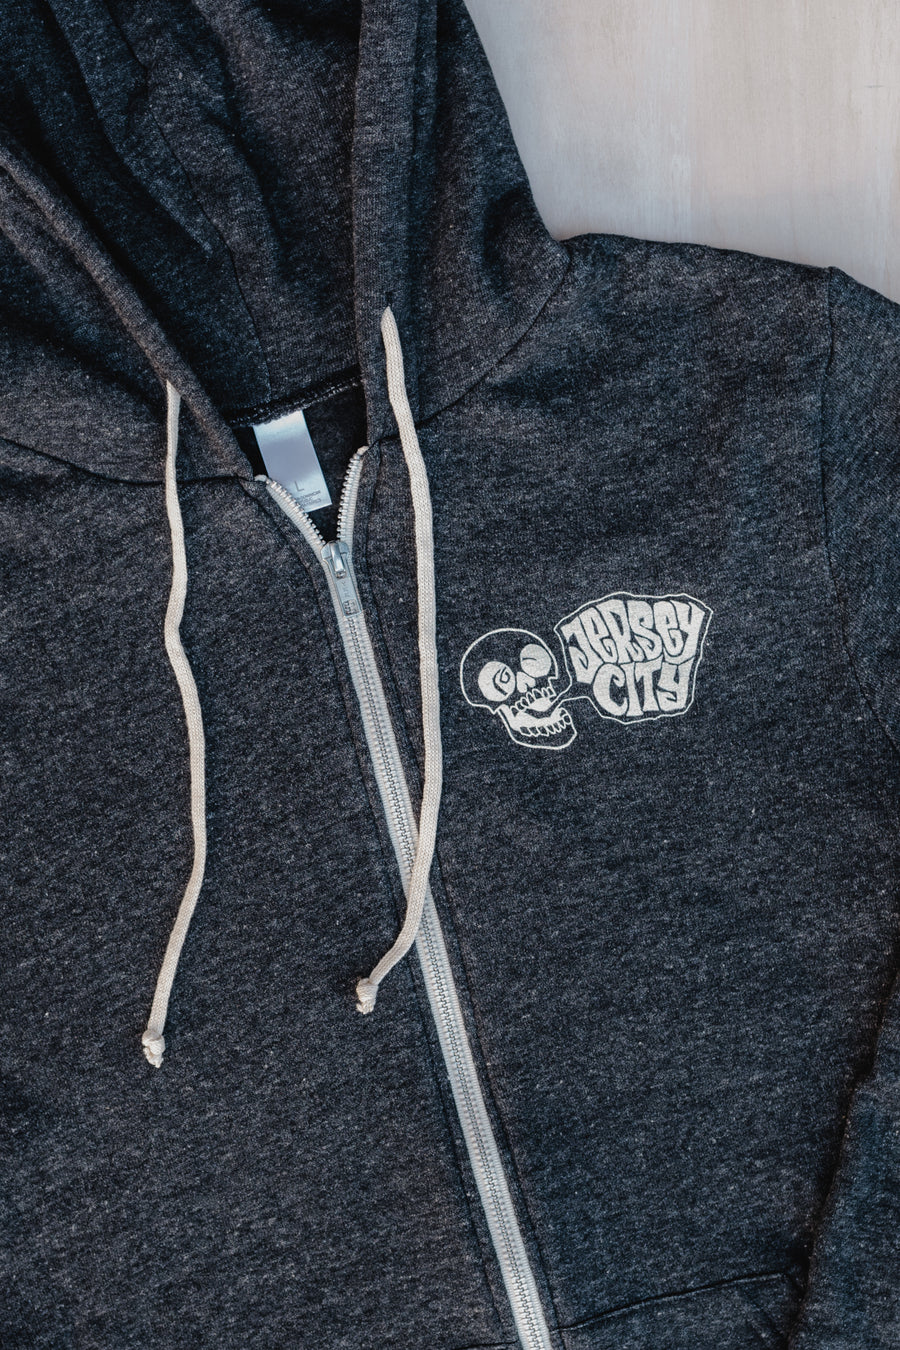 Hoodie Sweatshirt: Jersey City Screaming Skull